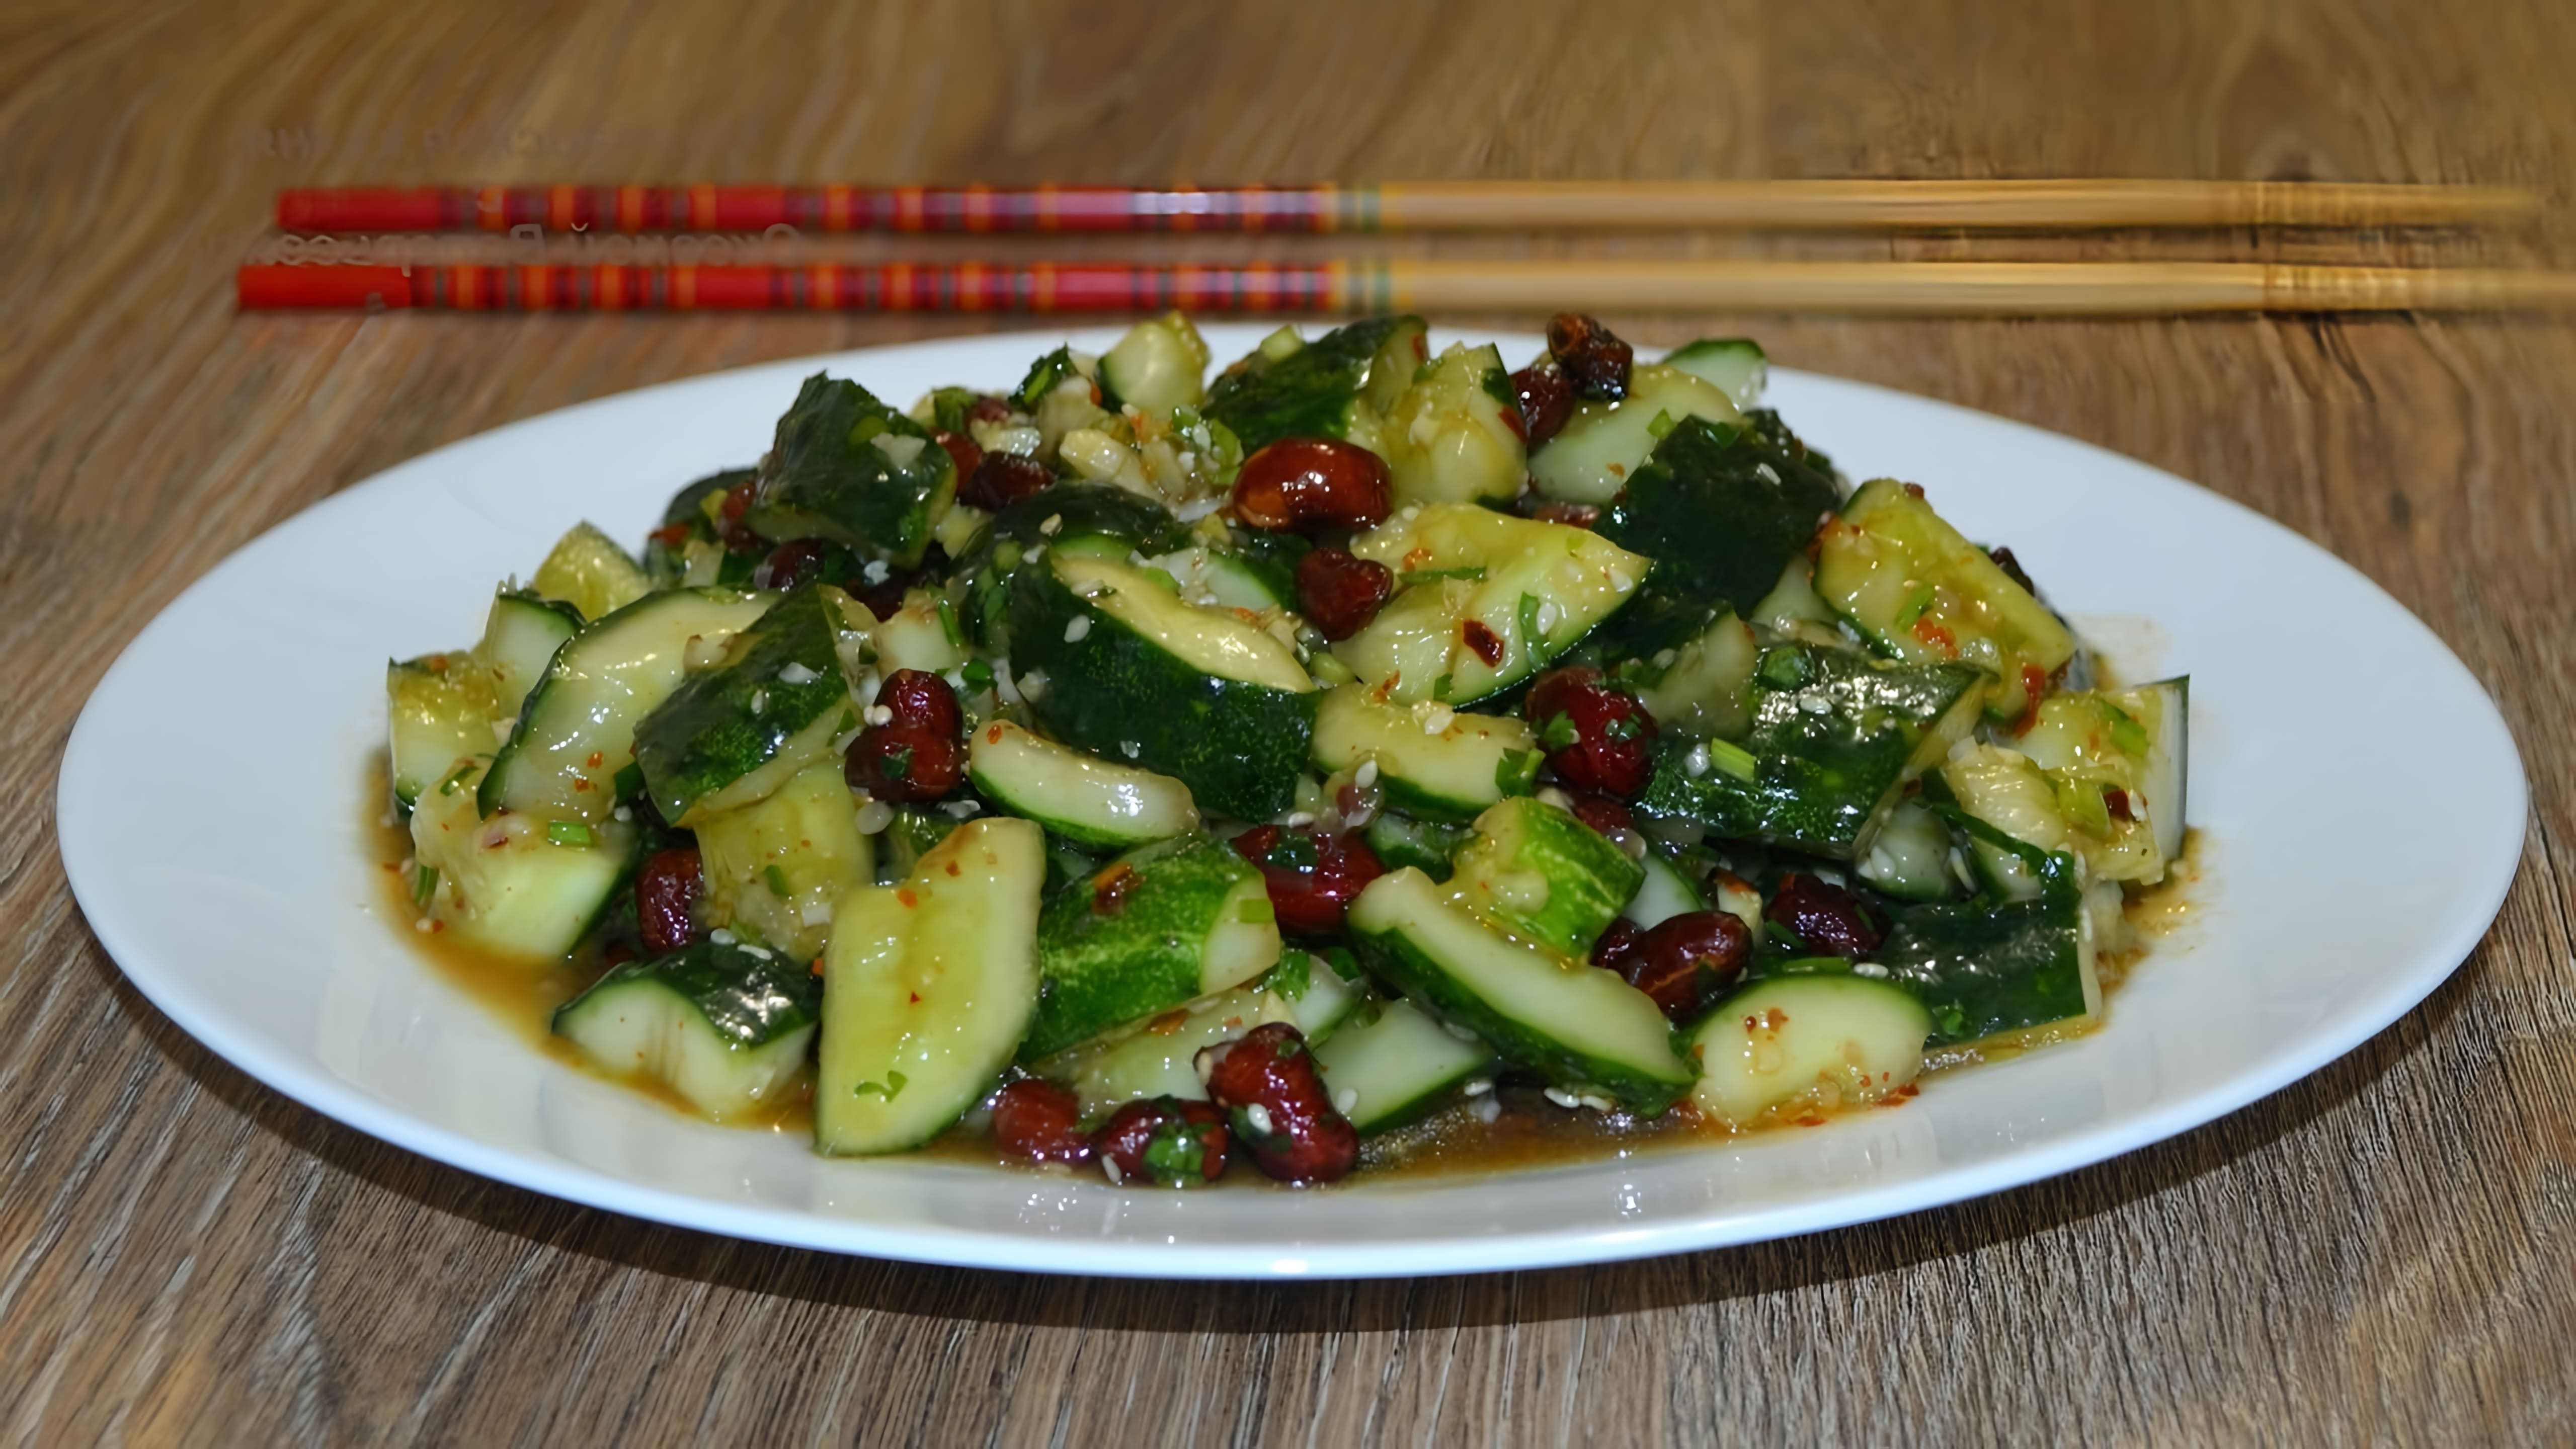 В этом видео демонстрируется рецепт приготовления китайского салата из "битых" огурцов с арахисом